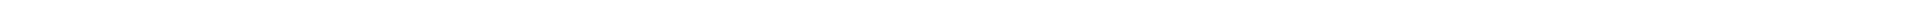 Элайнеры - цены на капы для выравнивания (исправления) прикуса, цены в Астане, Алматы, Атырау, Усть-Каменогорск, Уральск, Кокшетау в Казахстане, фото 8